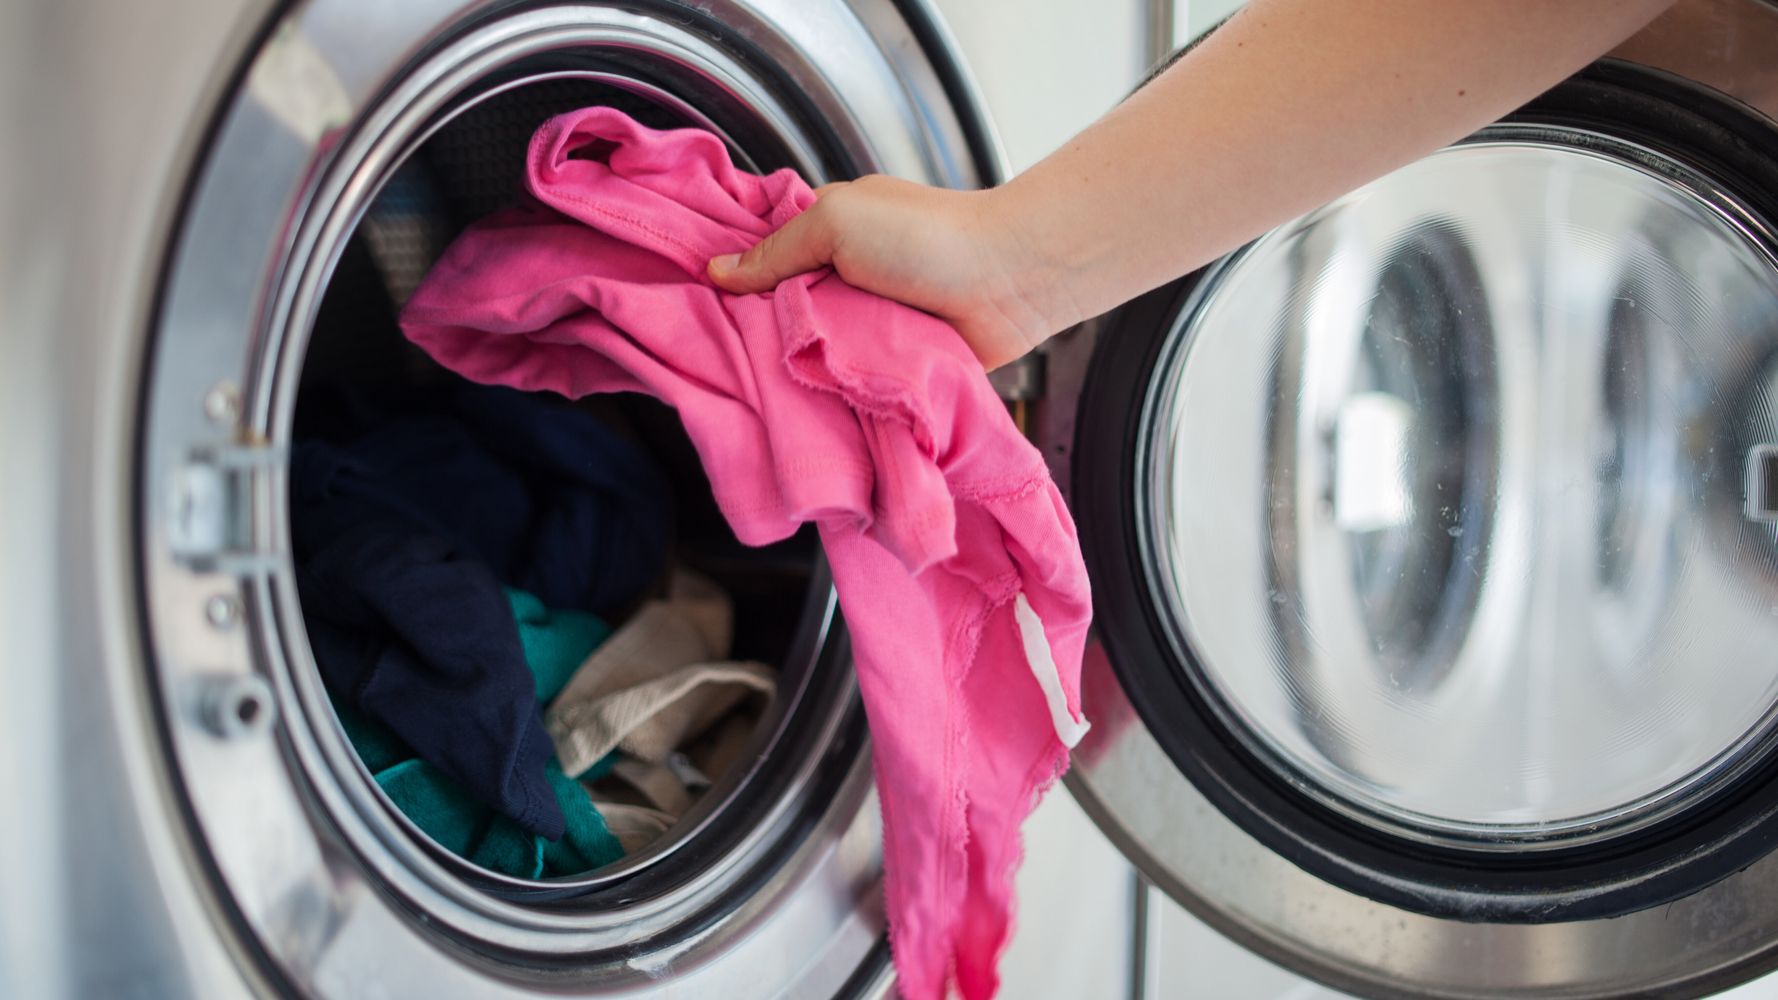 Sólo hay un tipo de tejido que soporta el lavado a 90 que recomienda el Gobierno para la ropa de trabajo | El HuffPost Life